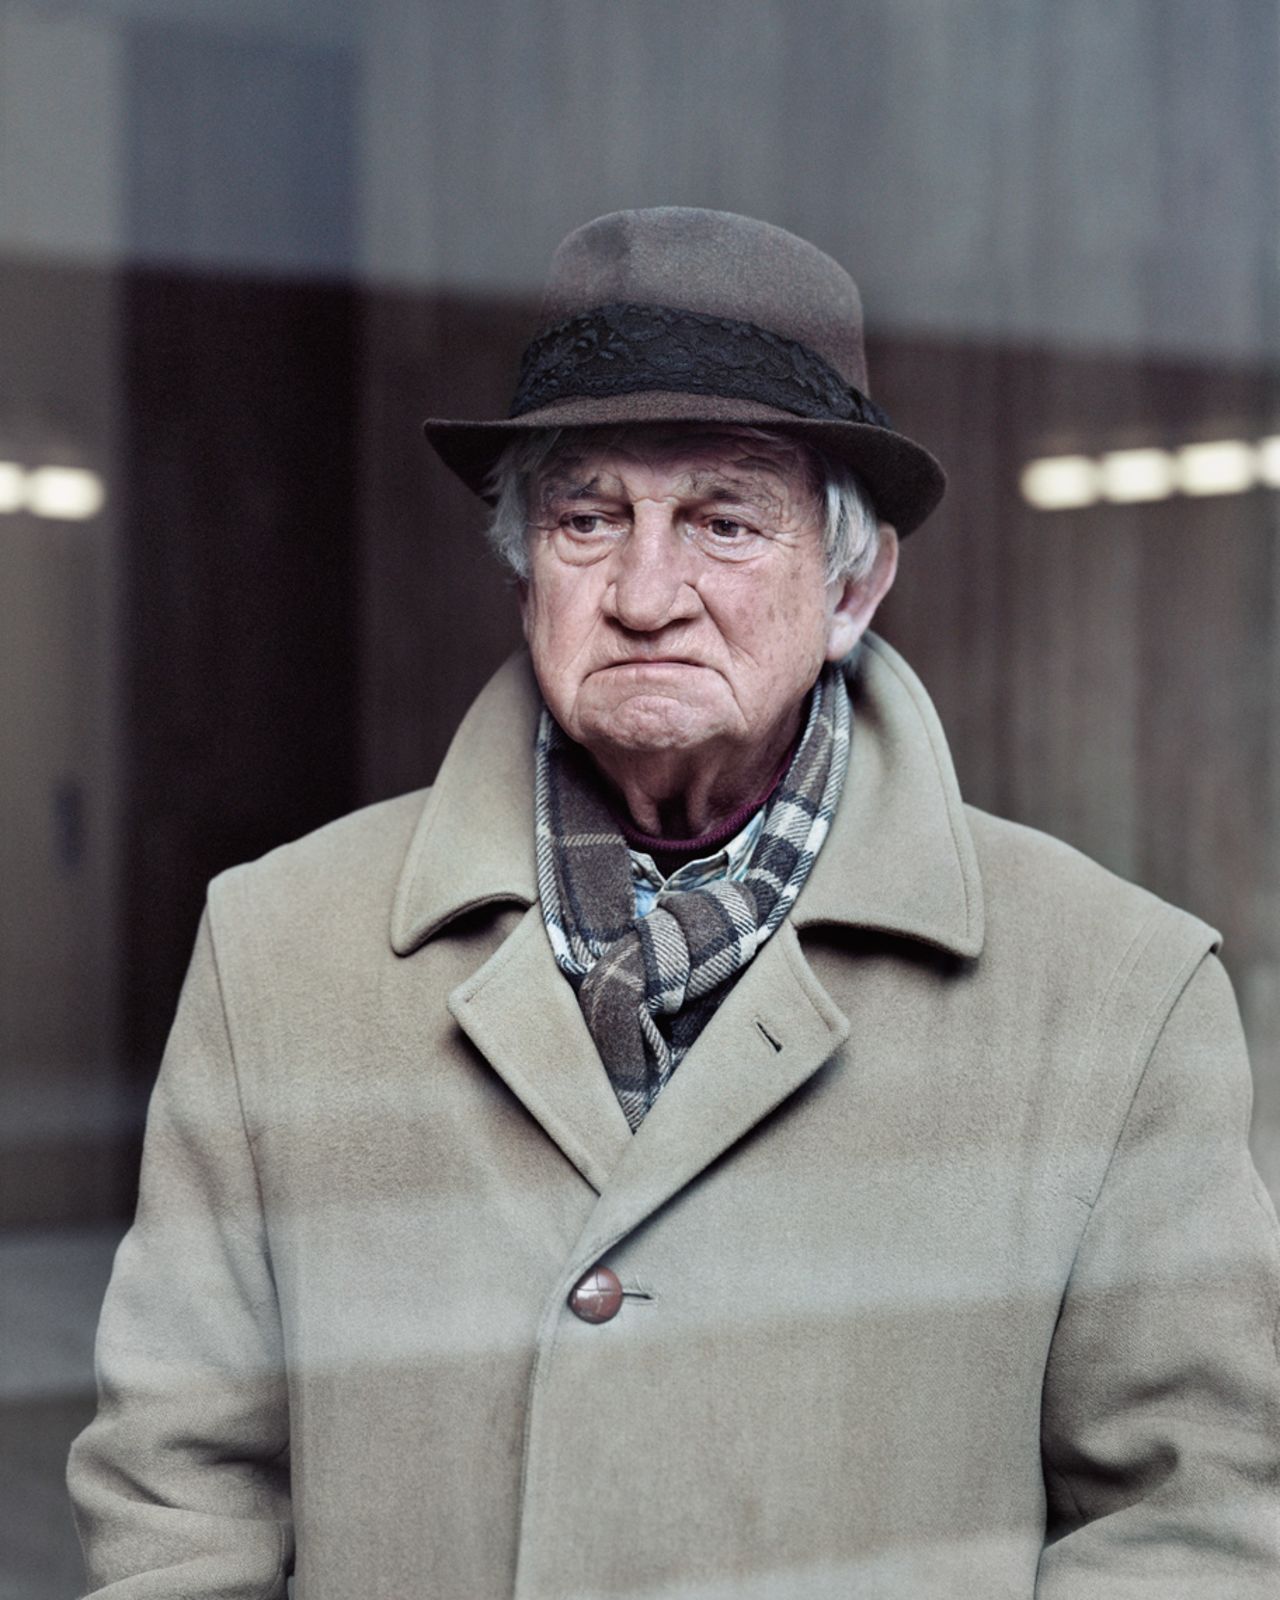 Alain, 80, Les Damiers, Courbevoie, 2013